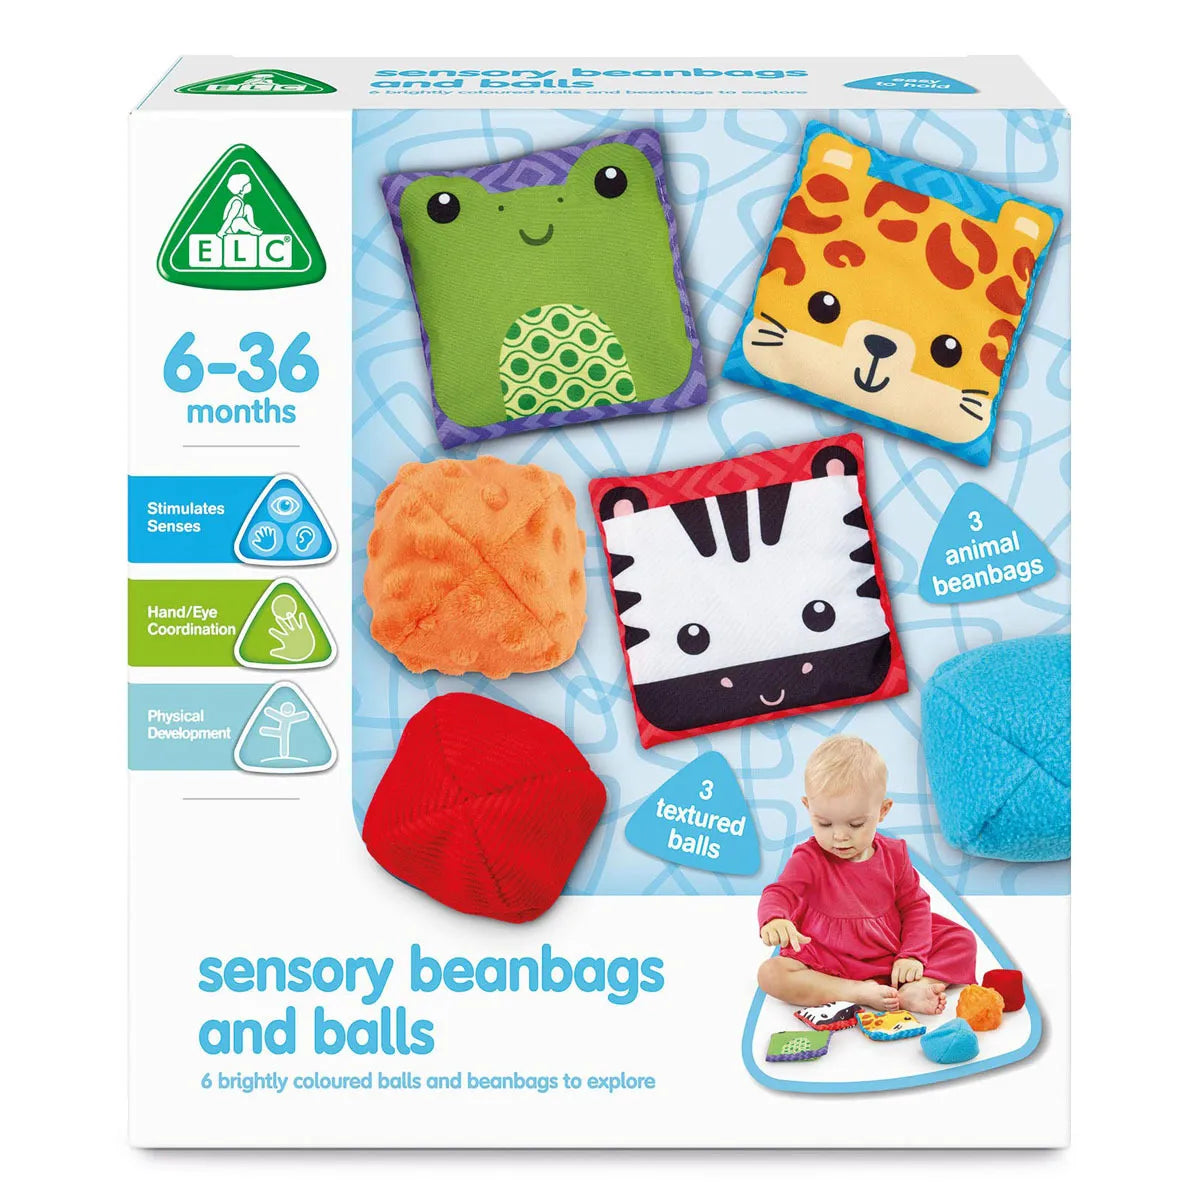 Sensory Beanbags & Balls